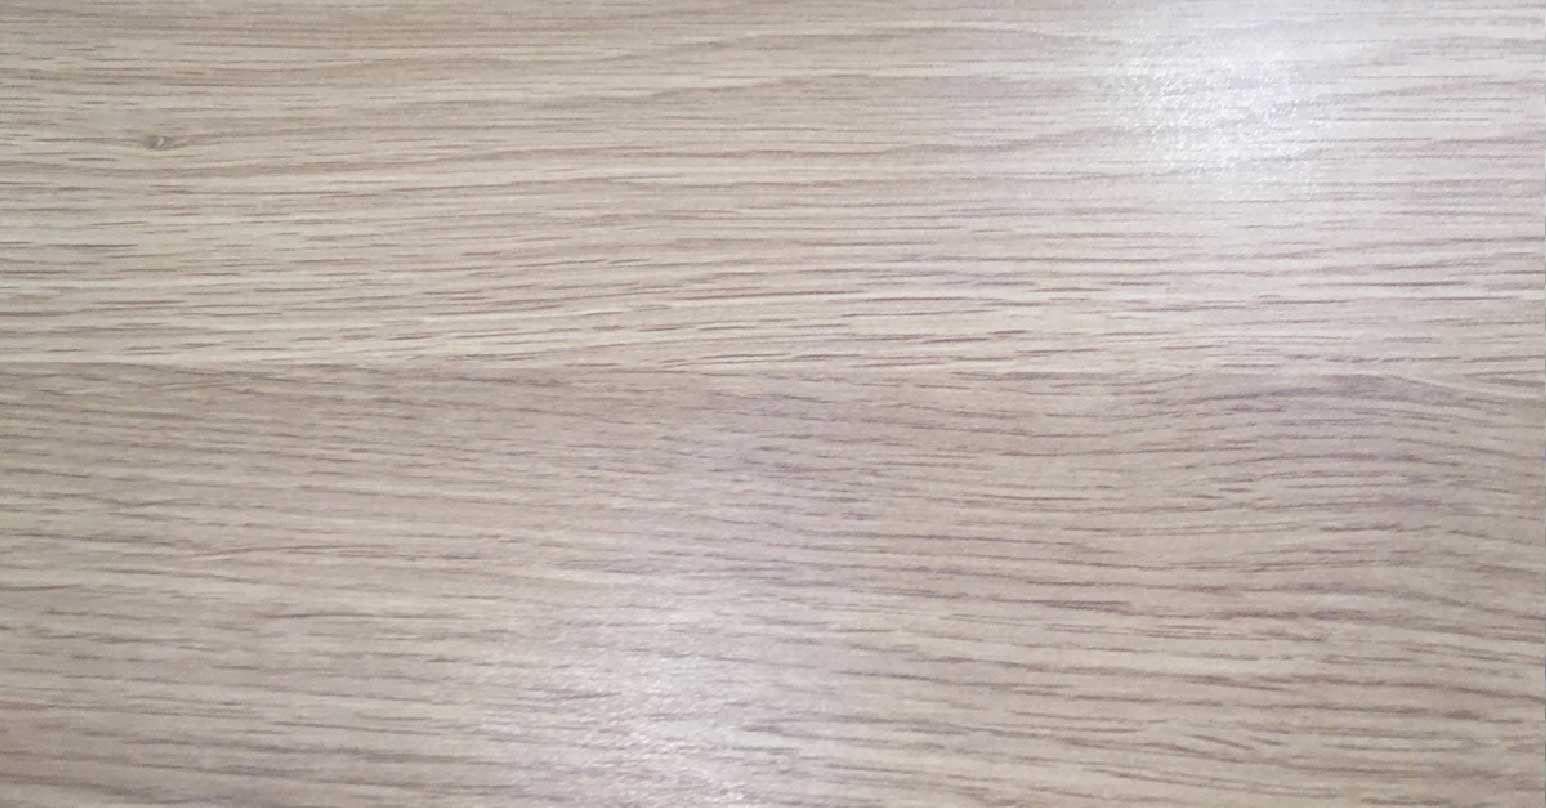 Cracked wooden worktop - After repair